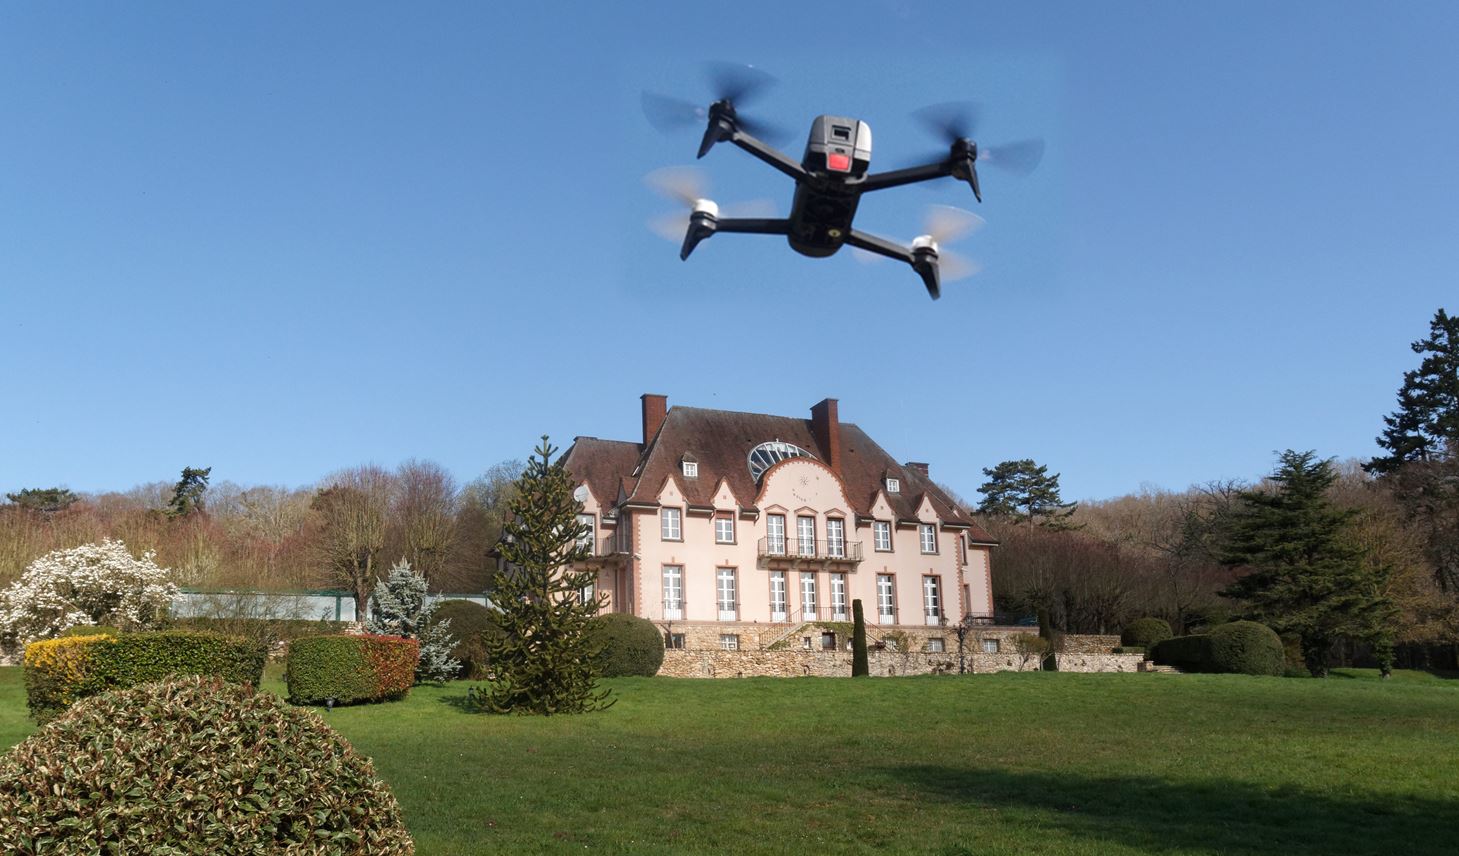 Drone devant une grosse maison